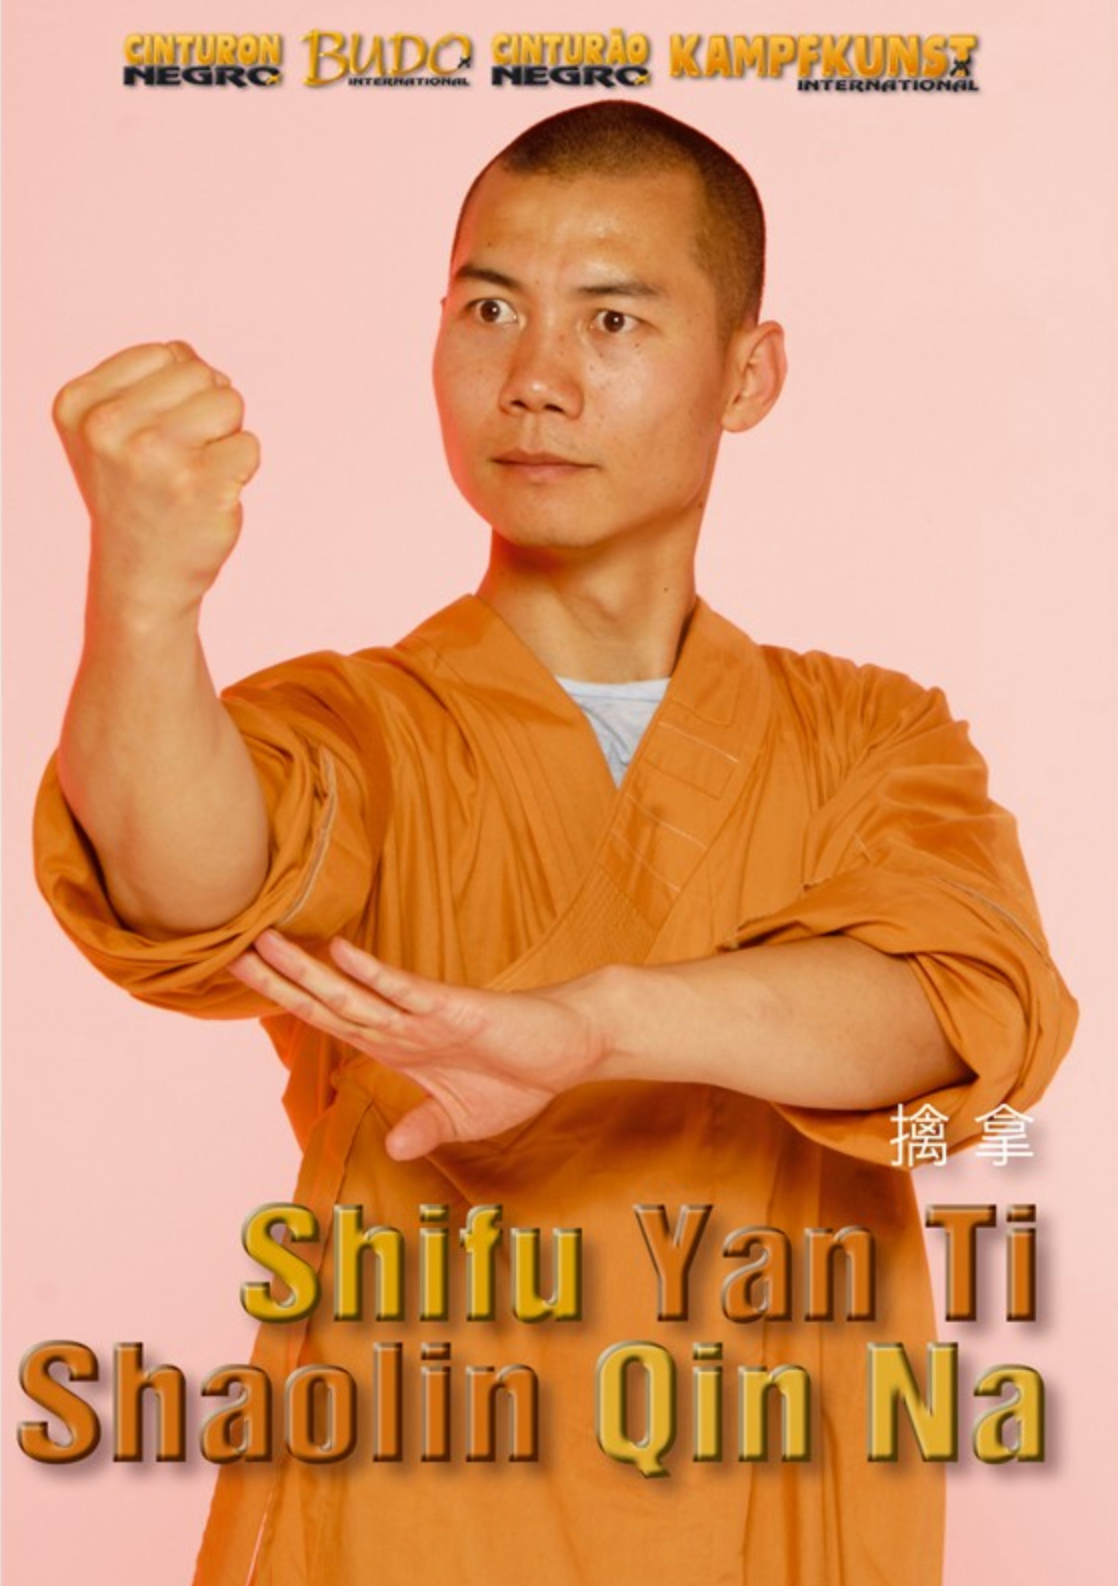 Shaolin Qin Na DVD with Shi Yan Ti - Budovideos Inc